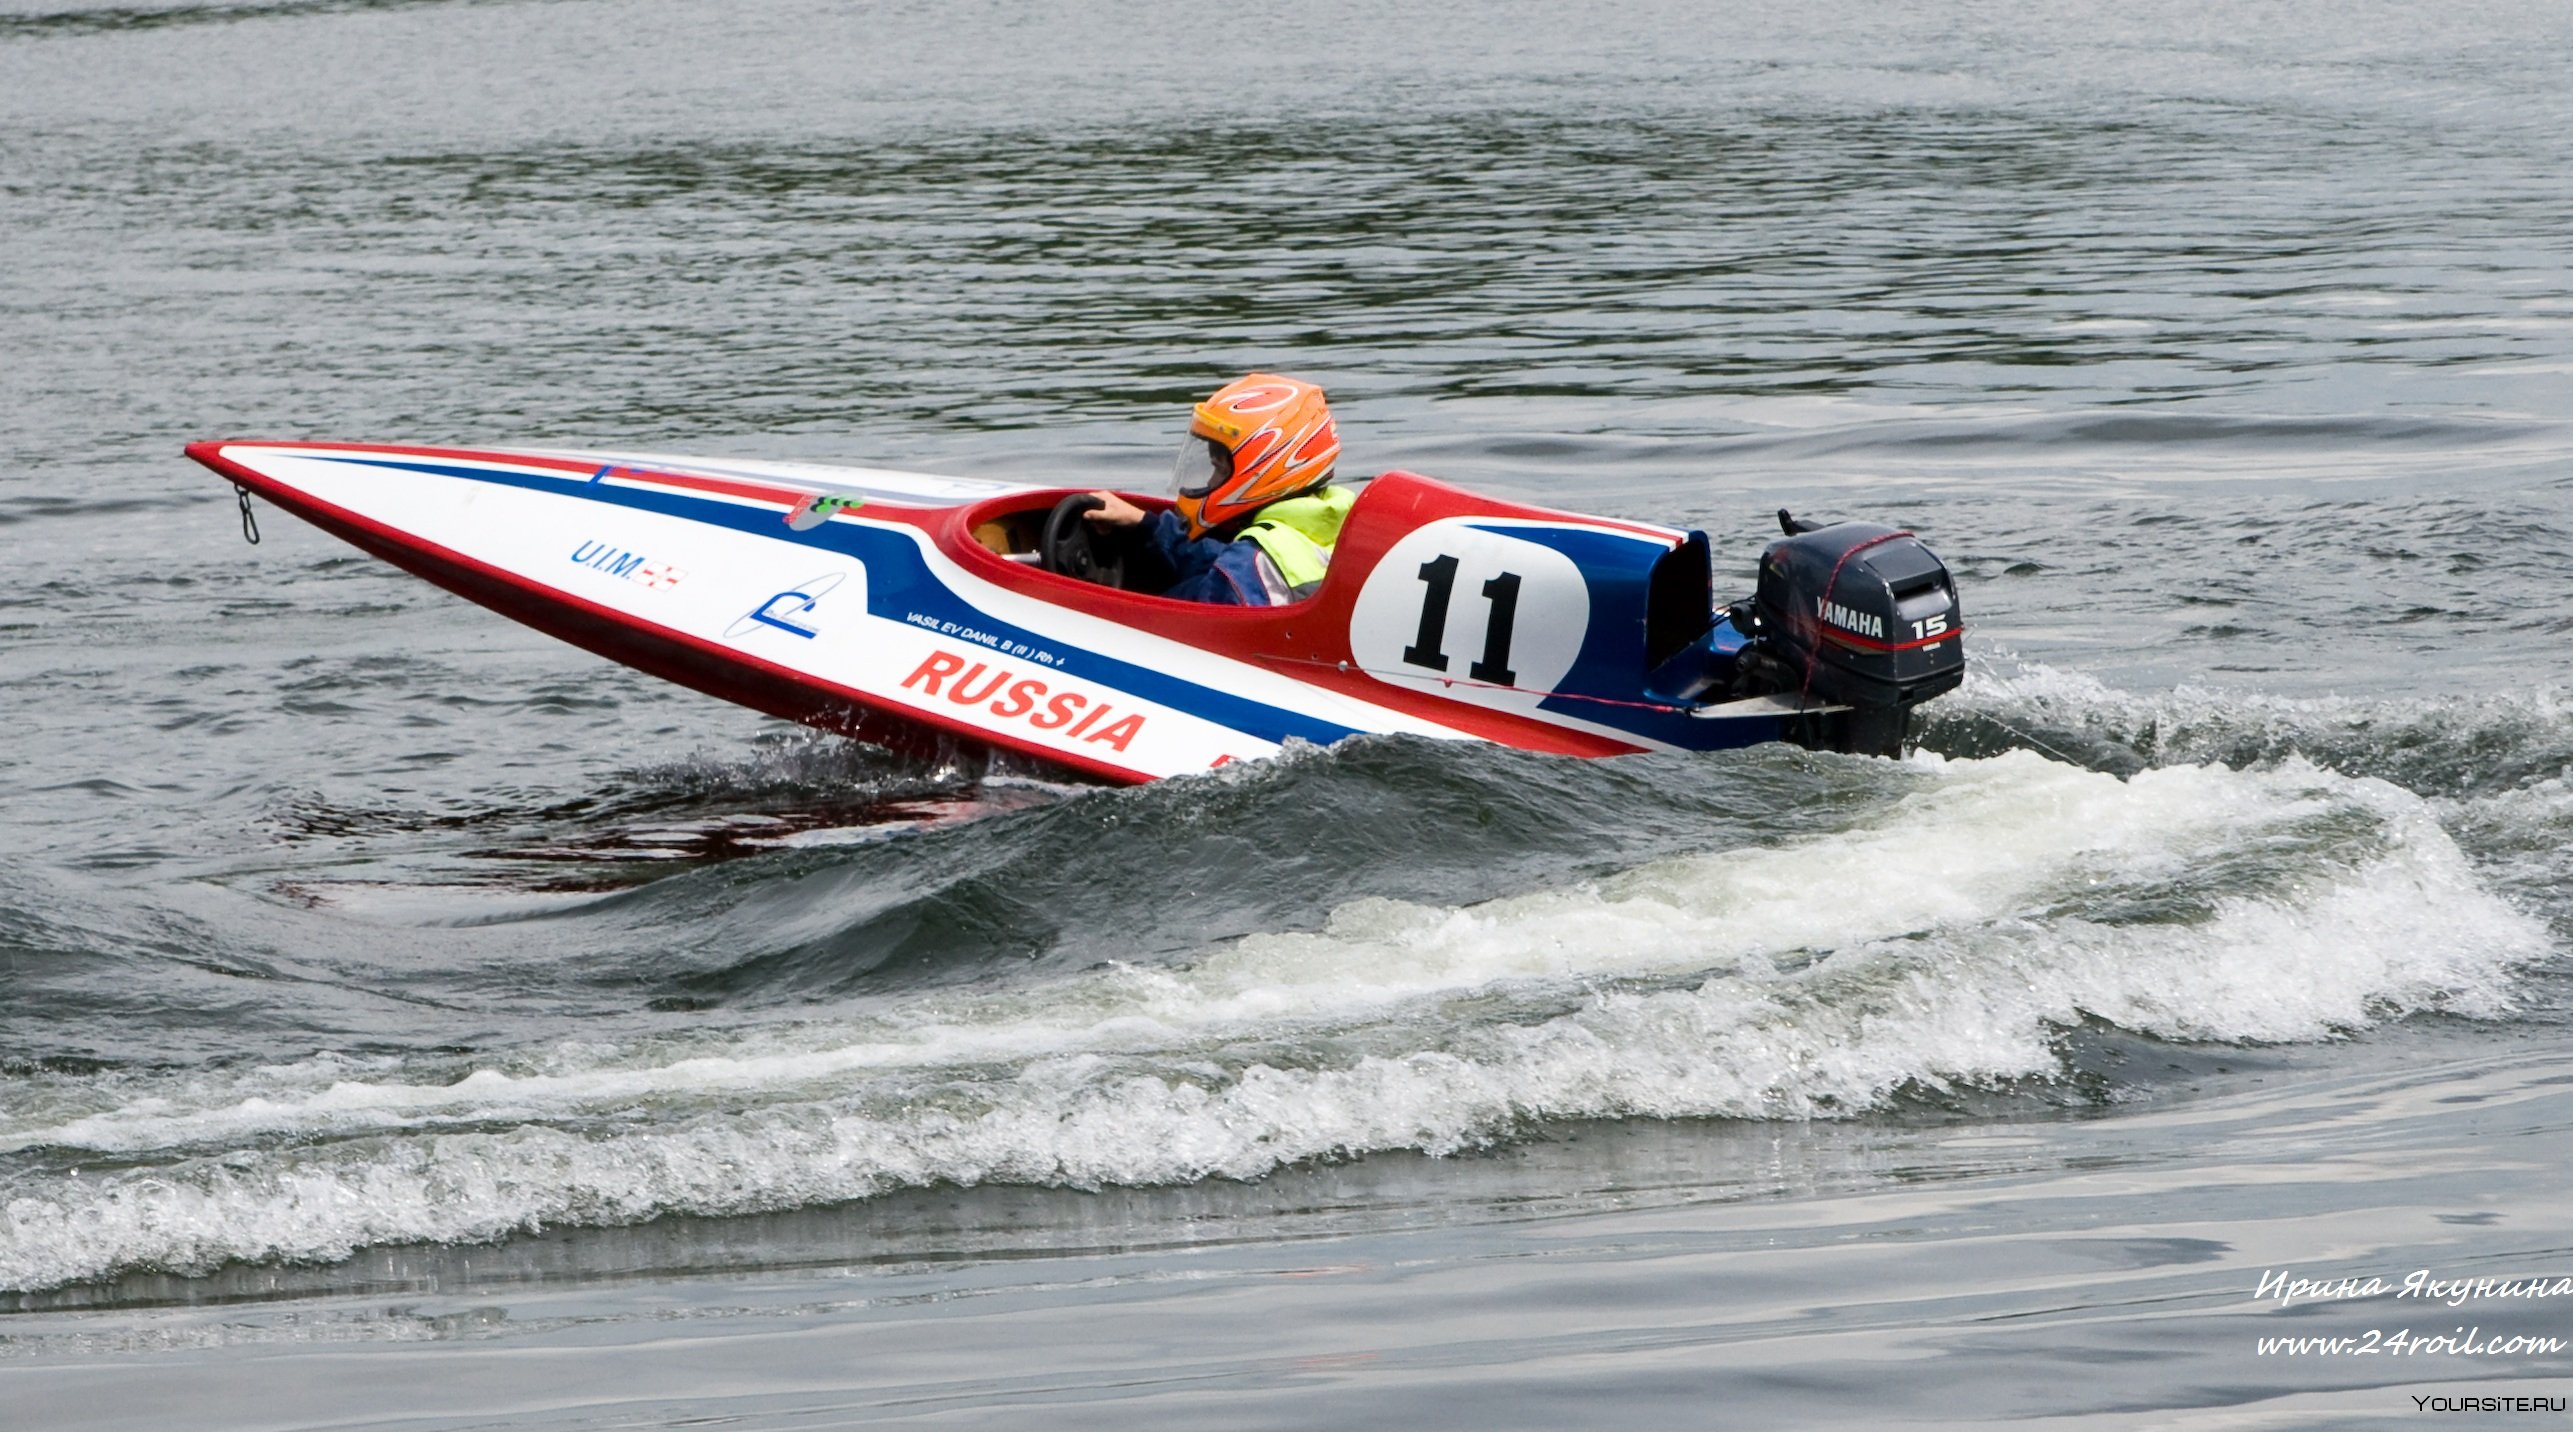 Спортивная лодка 6. Мотолодка gt-30 водно-моторный спорт. Водномоторный спорт глиссера. Спортивная лодка глиссер. Формула 2 водно моторный спорт.